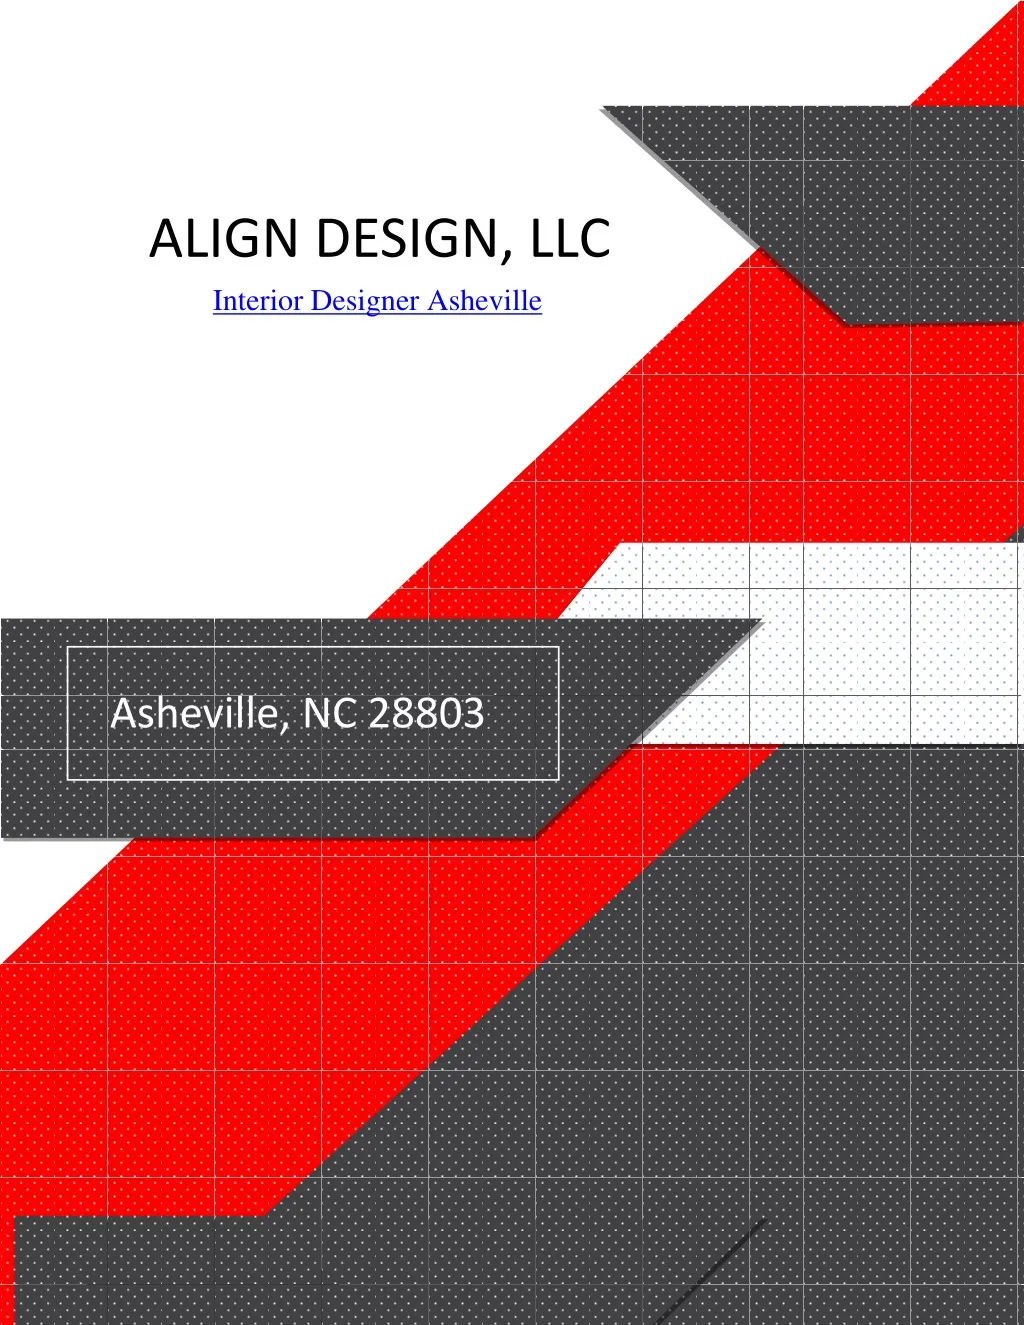 align design llc